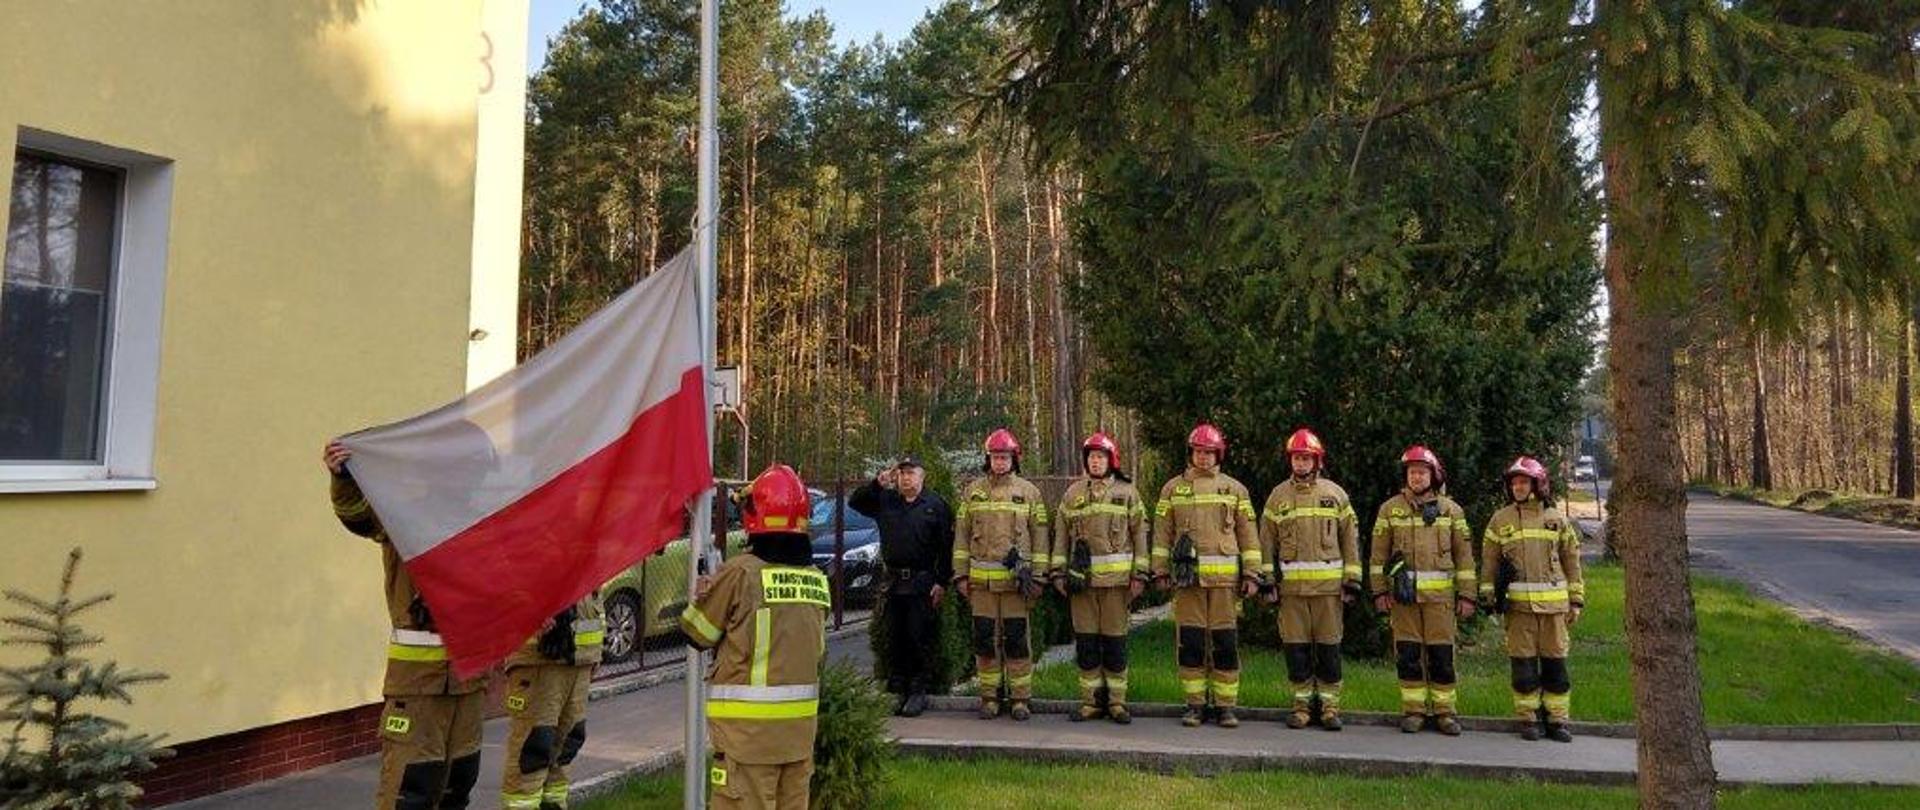 Na pierwszym planie z lewej trzej strażacy w żółtych ubraniach specjalnych i czerwonych hełmach w trakcie zawieszania flagi Państwowej na maszt. W tle w szeregu stoją pozostali strażacy, sześciu w żółtych ubraniach specjalnych i czerwonych hełmach, pierwszy z lewej w czarny, ubraniu sztabowym, jest to dowódca JRG4 w Bydgoszczy. Zbiórka przebiega na placu z kostki brukowej przed JRG4 w Bydgoszczy. W tle z prawej ulica, za strażakami drzewa. 